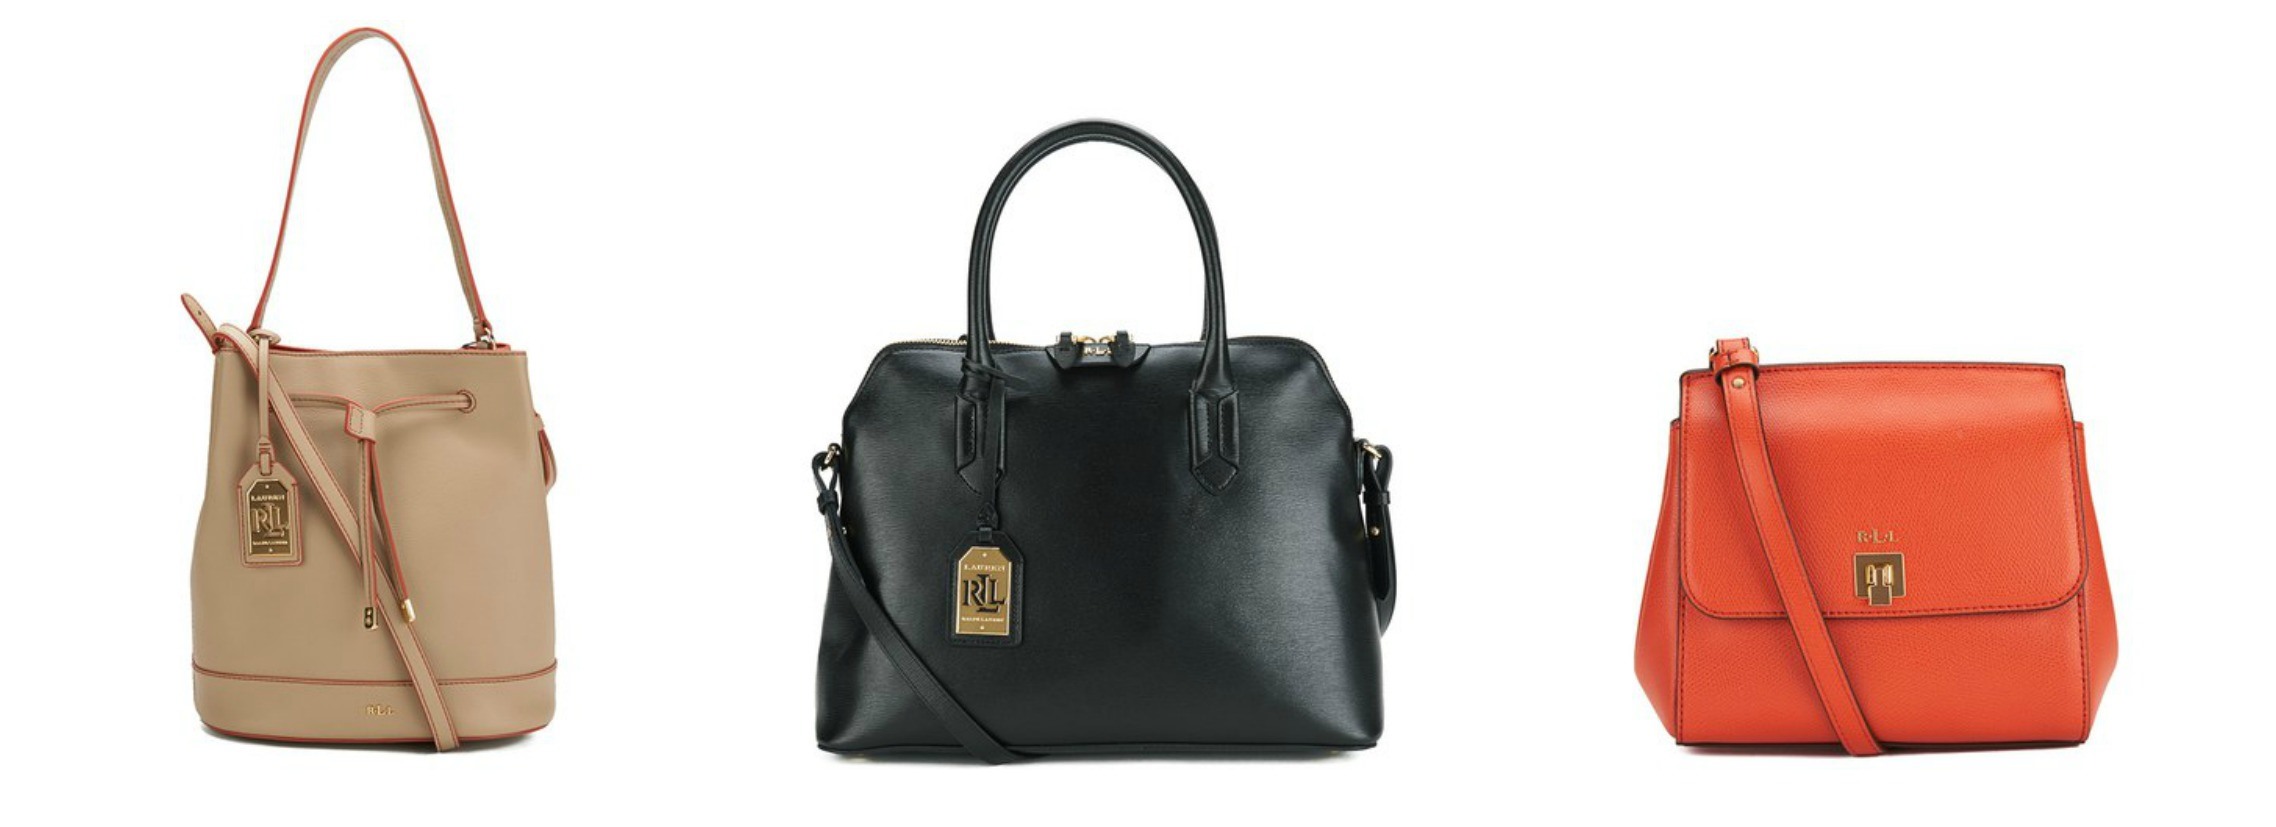 How to Style | A Lauren Ralph Lauren Handbag - MyBag